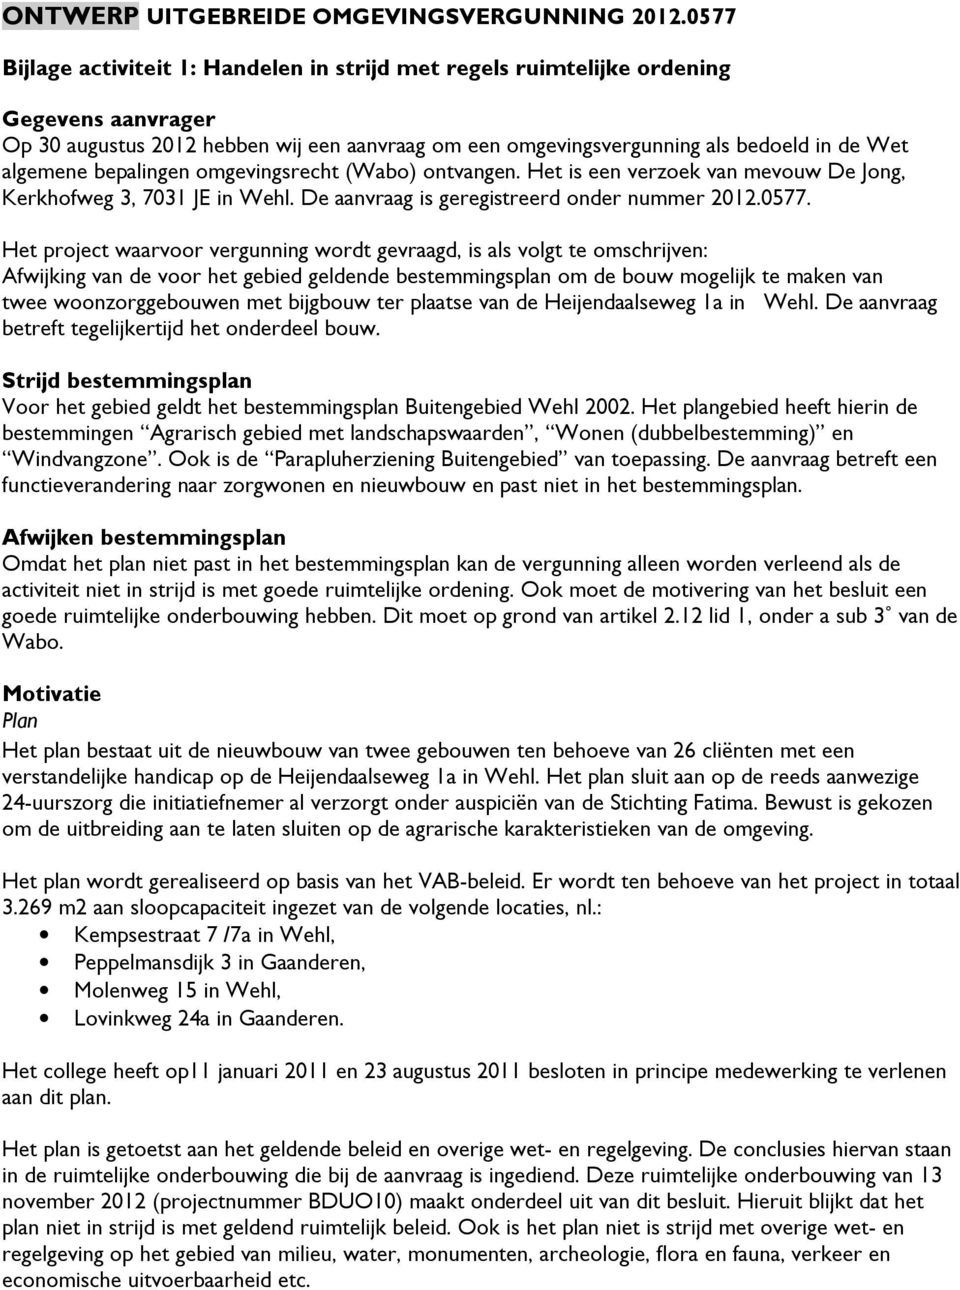 bepalingen omgevingsrecht (Wabo) ontvangen. Het is een verzoek van mevouw De Jong, Kerkhofweg 3, 7031 JE in Wehl. De aanvraag is geregistreerd onder nummer 2012.0577.